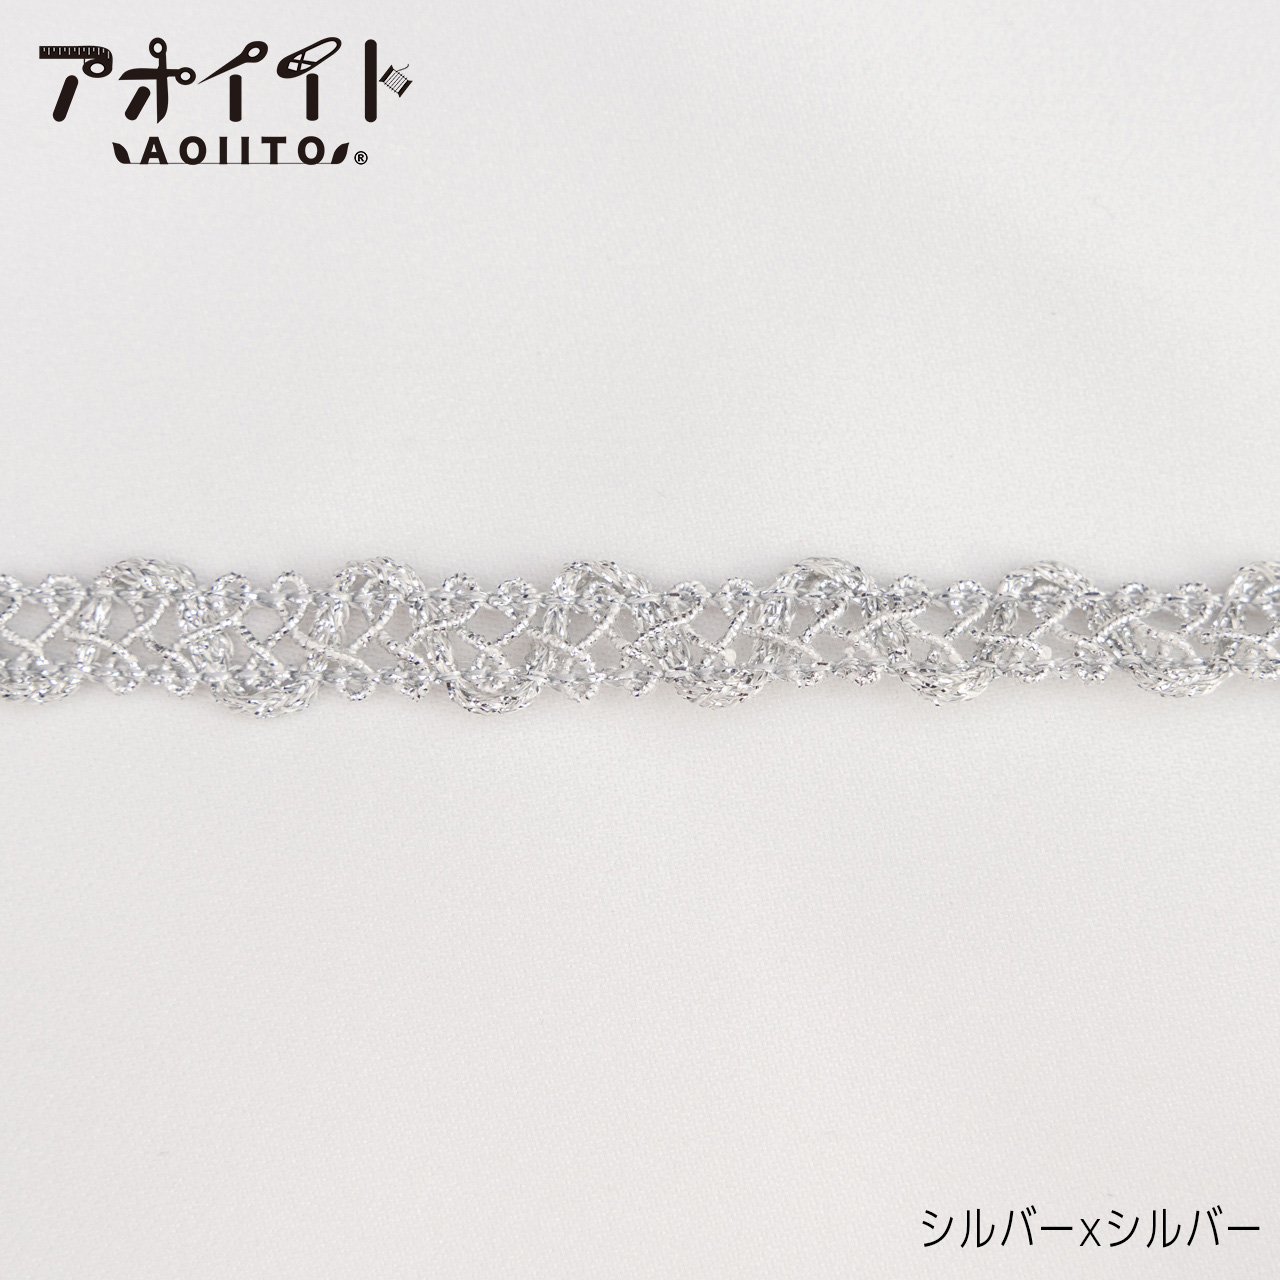 【712】9mmラメブレード・アラベスク柄C金銀ブレード画像